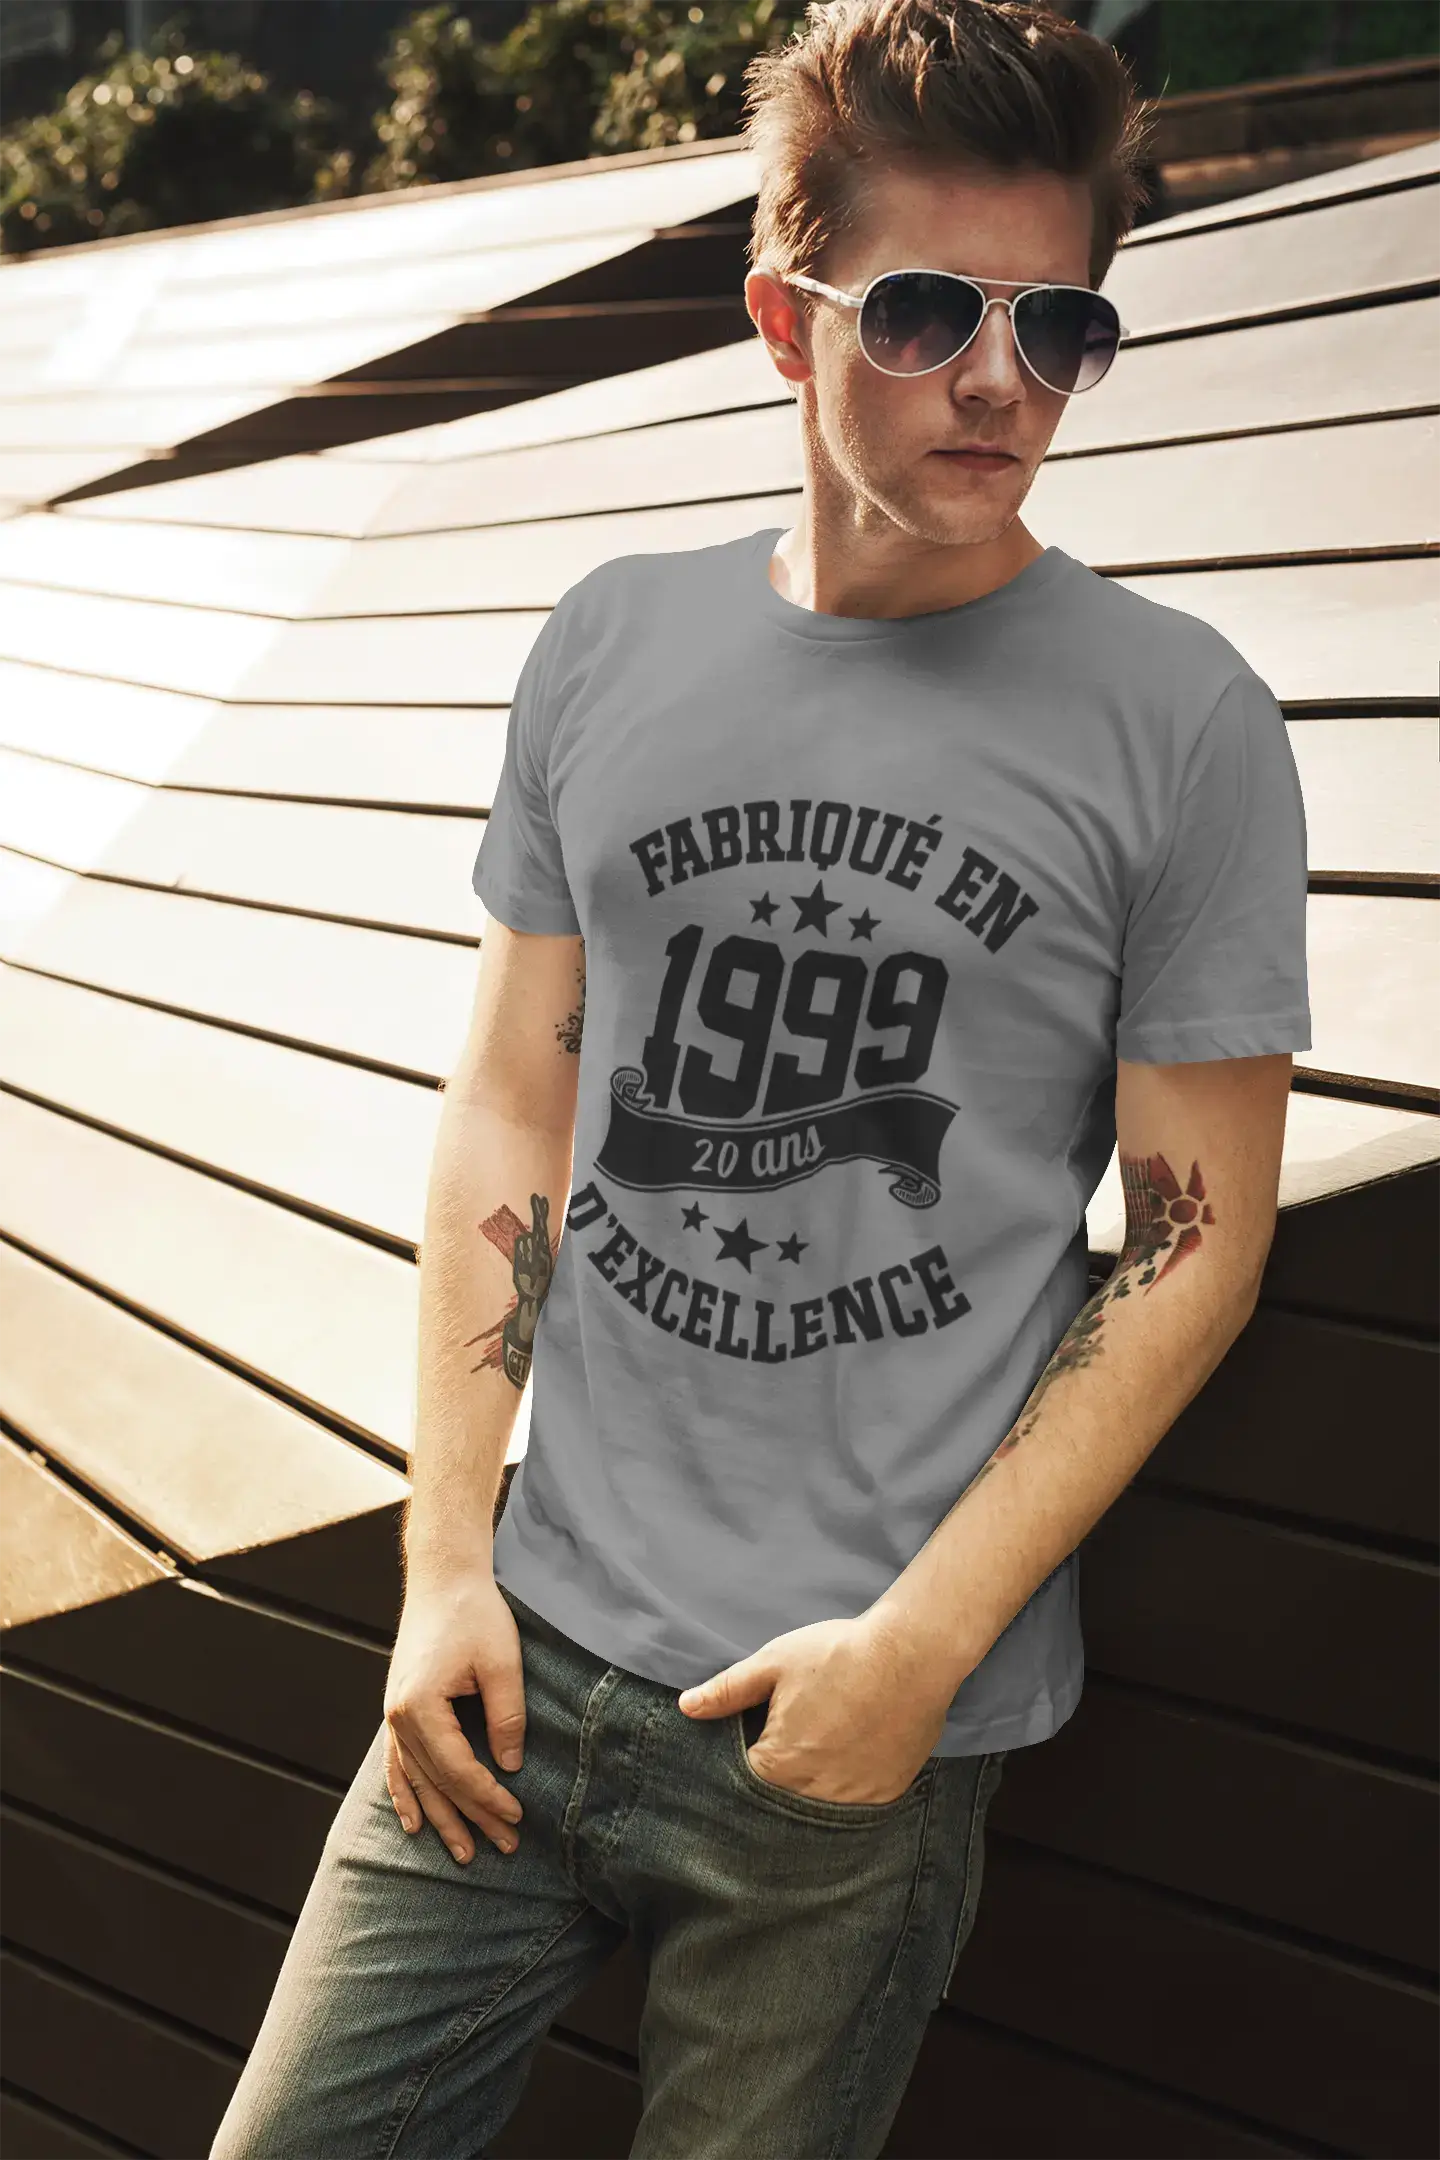 ULTRABASIC - Fabriqué en 1999, 20 Ans d'être Génial Unisex T-Shirt Noir Profond